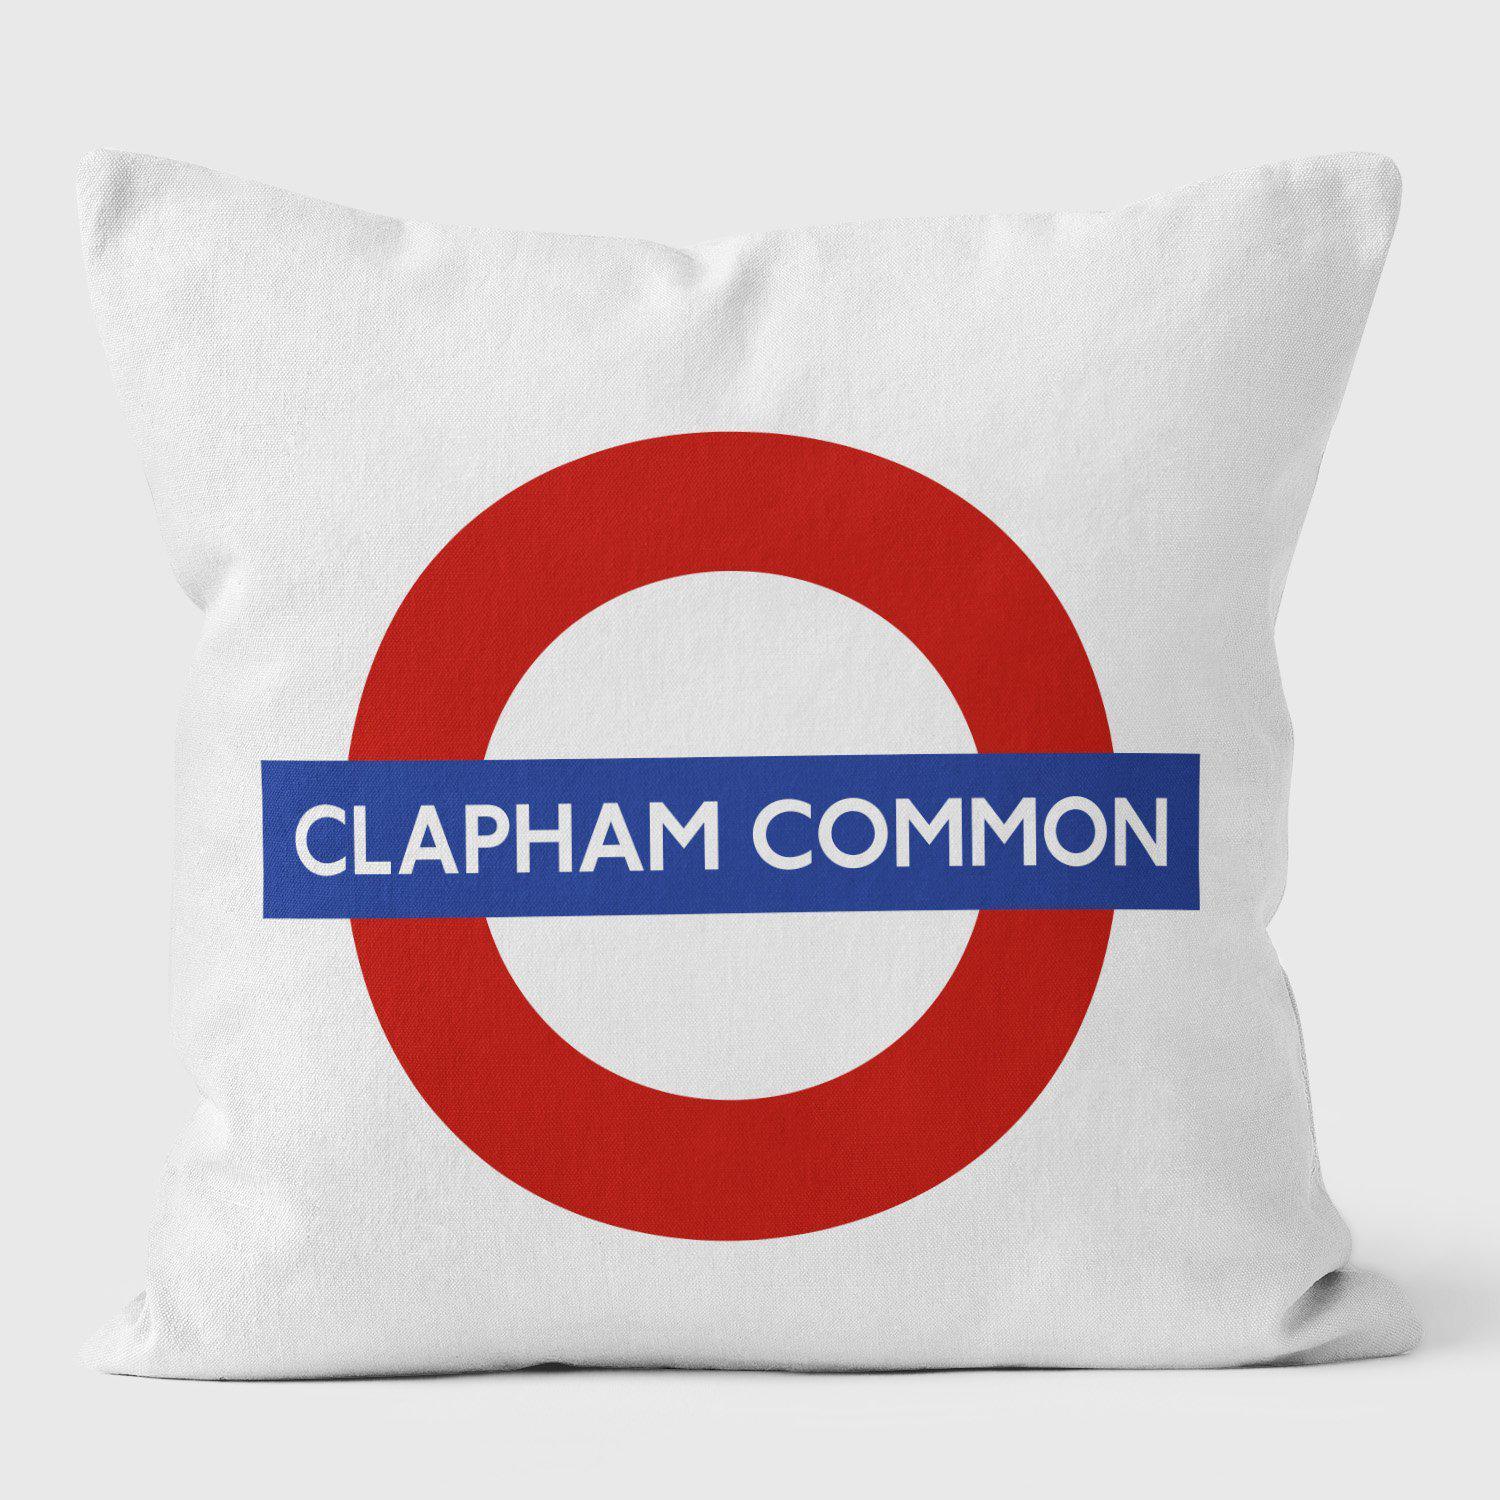 Clapham Common London Underground Tube Station Roundel Cushion - Handmade Cushions UK - WeLoveCushions